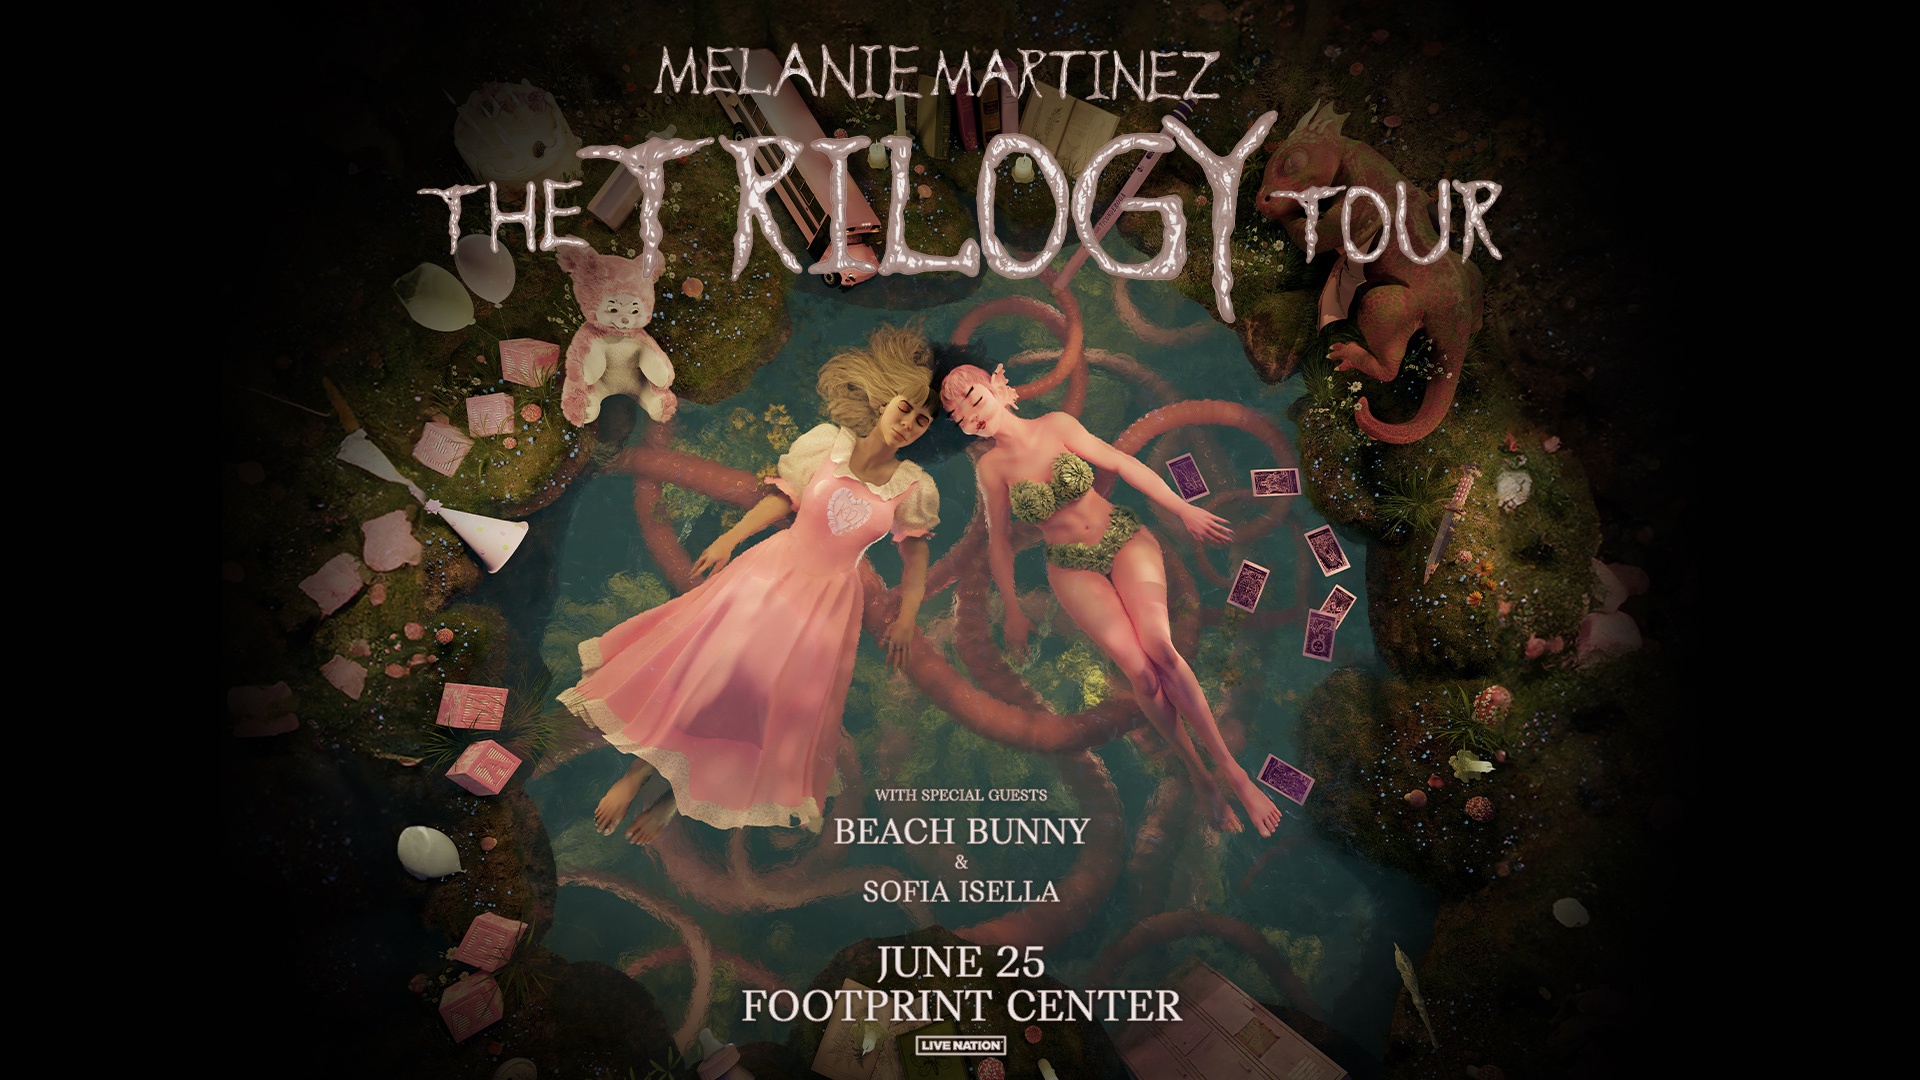 Melanie Martinez Footprint Center